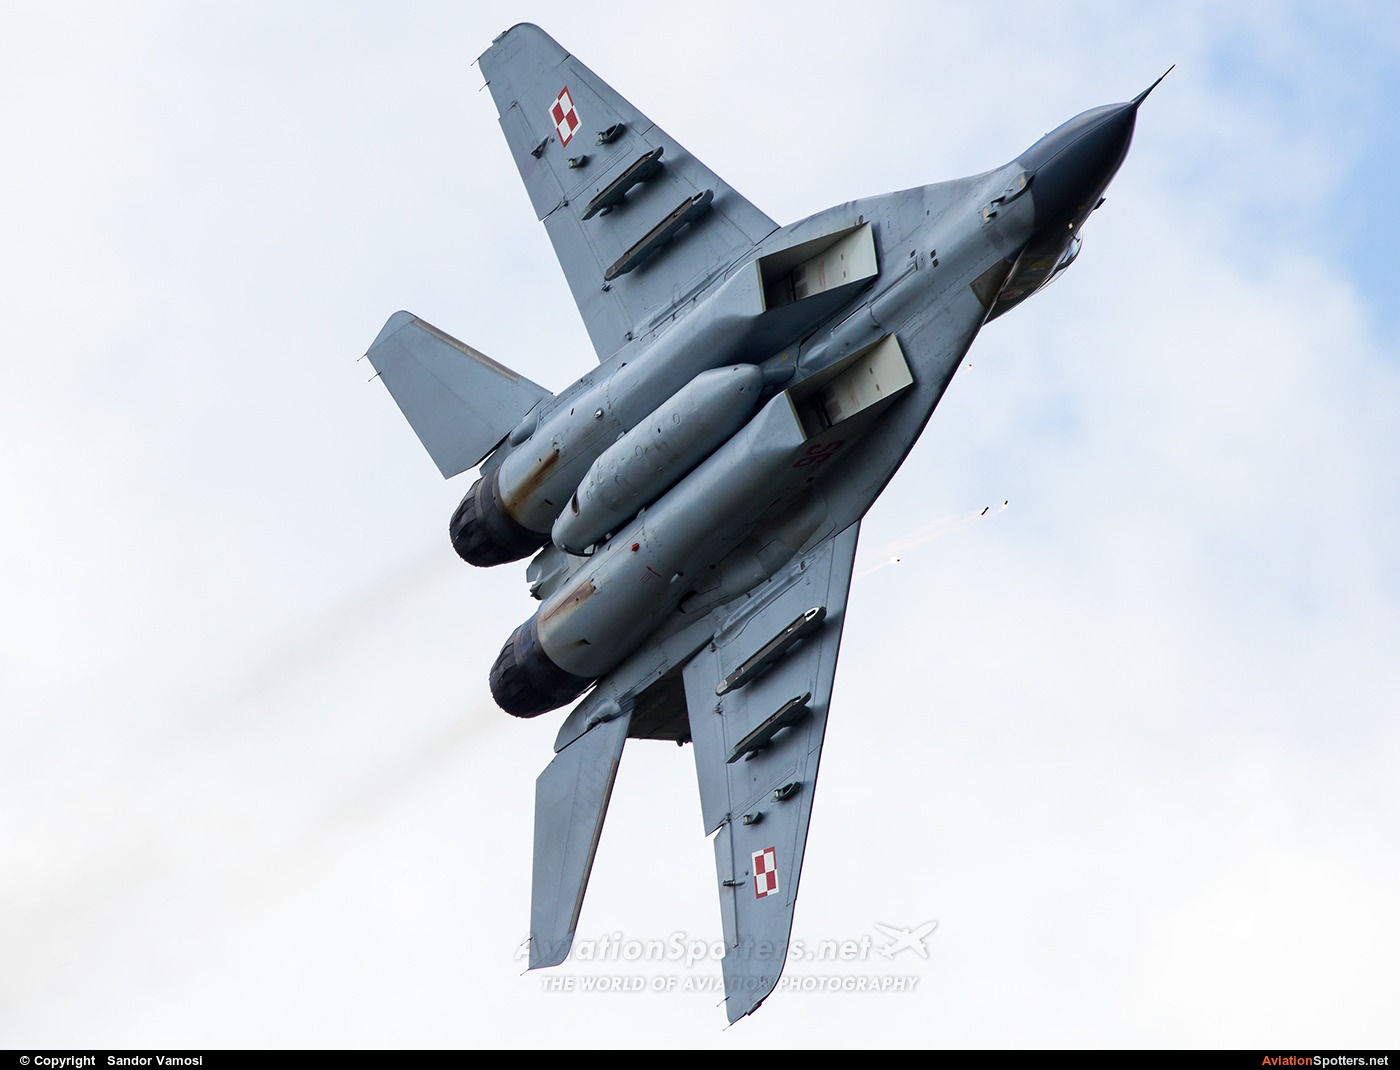 Poland - Air Force  -  MiG-29A  (56) By Sandor Vamosi (ALEX67)